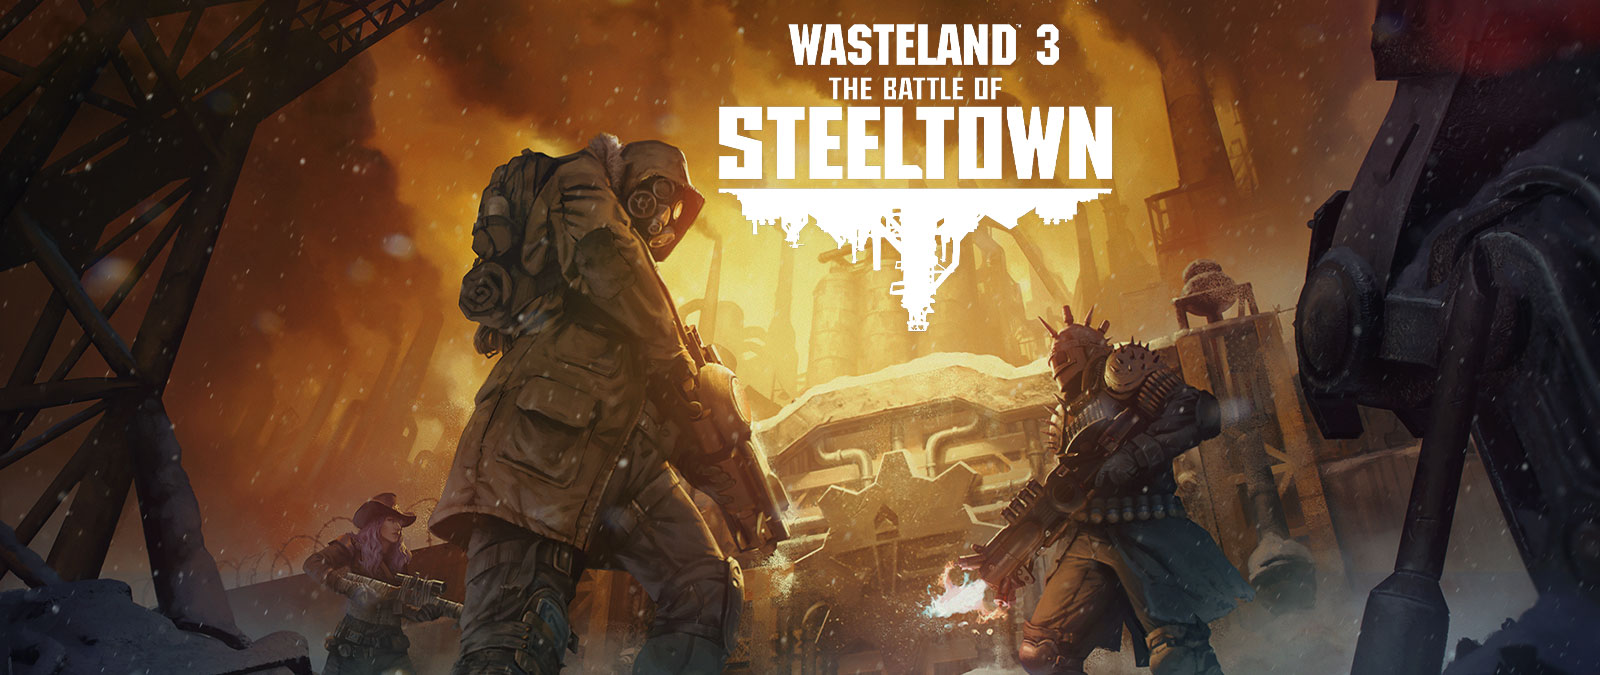 Wasteland 3: The Battle of Steeltown. Arka planda bulunan endüstriyel bir tesis kapısının önünde duran silahlı ve zırhlı üç karakter